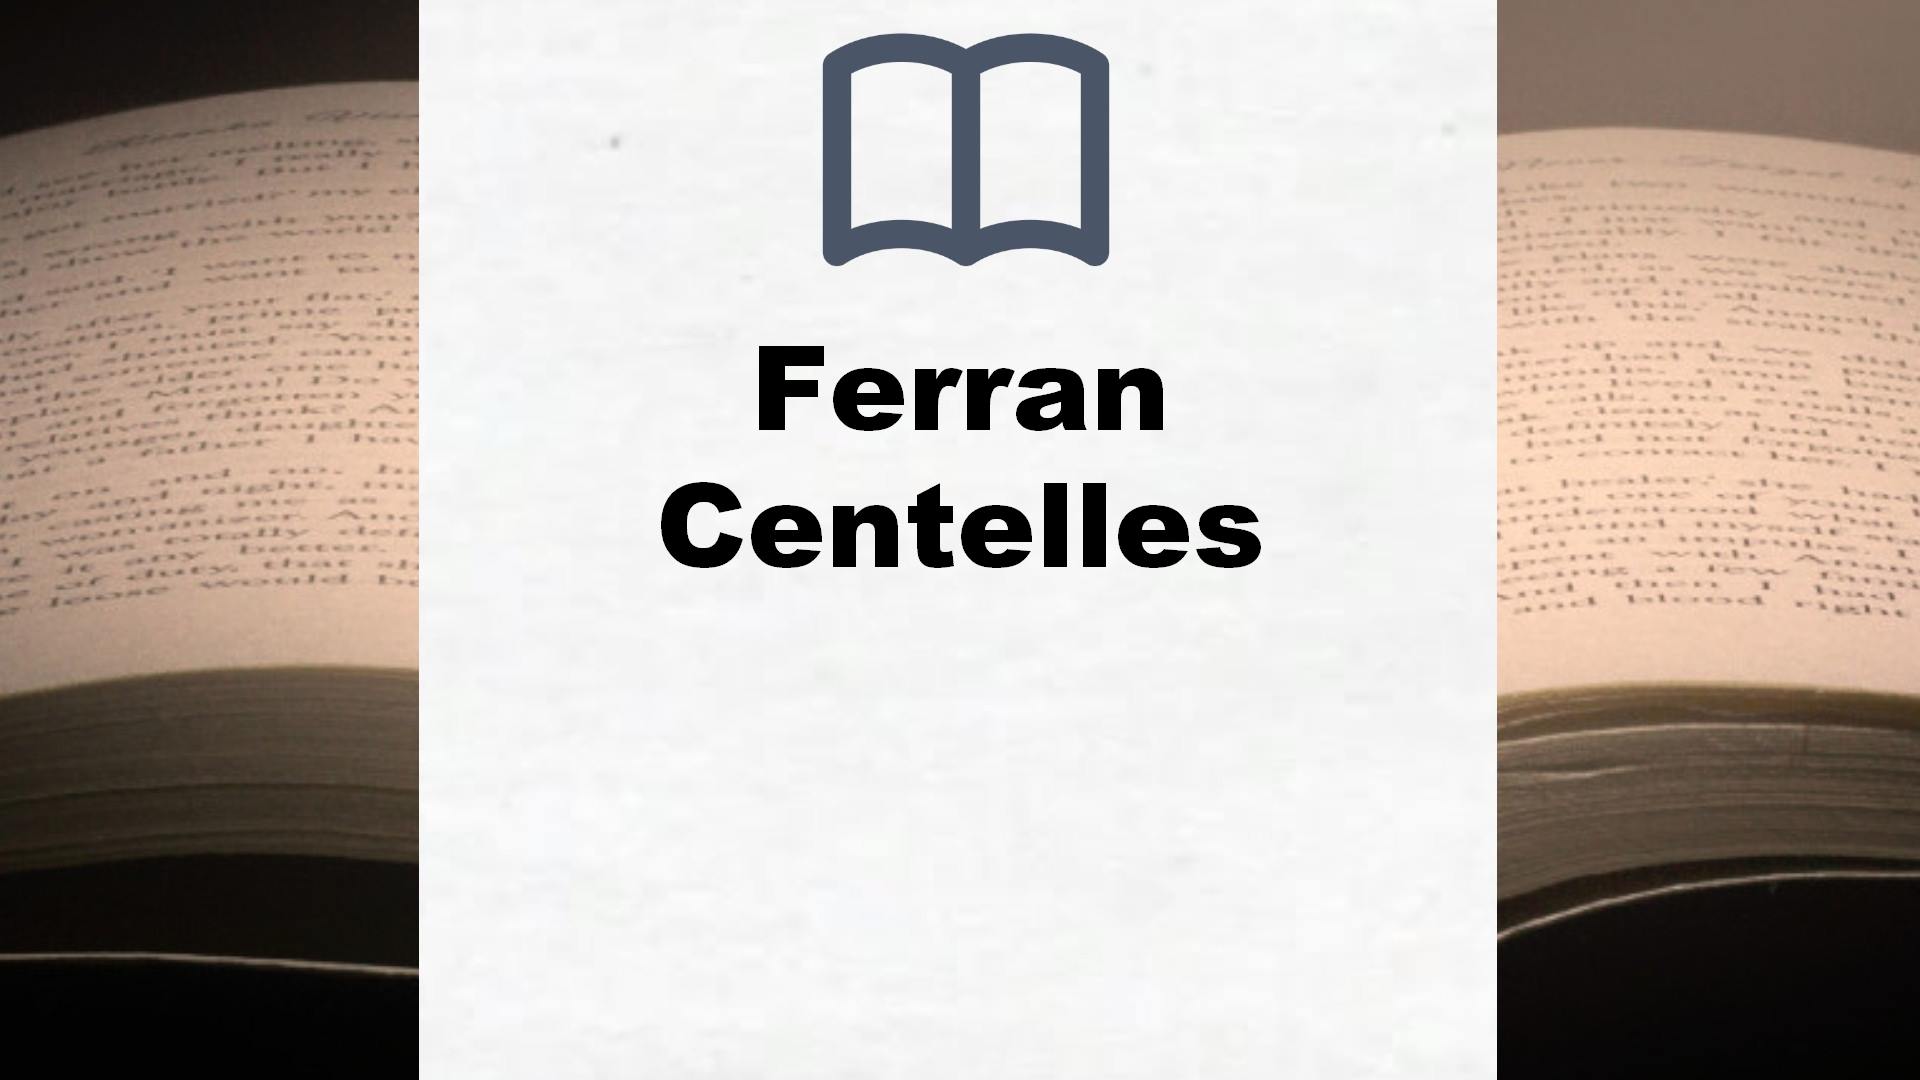 Libros Ferran Centelles